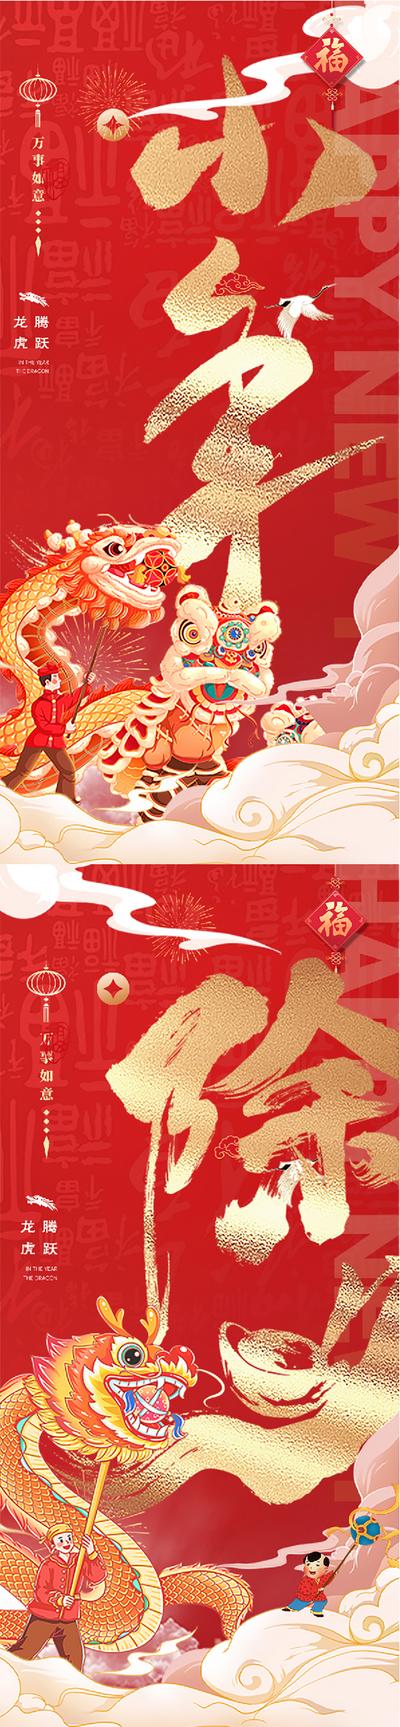 【南门网】海报 中国传统节日 龙年 小年 除夕 舞狮 舞龙 插画